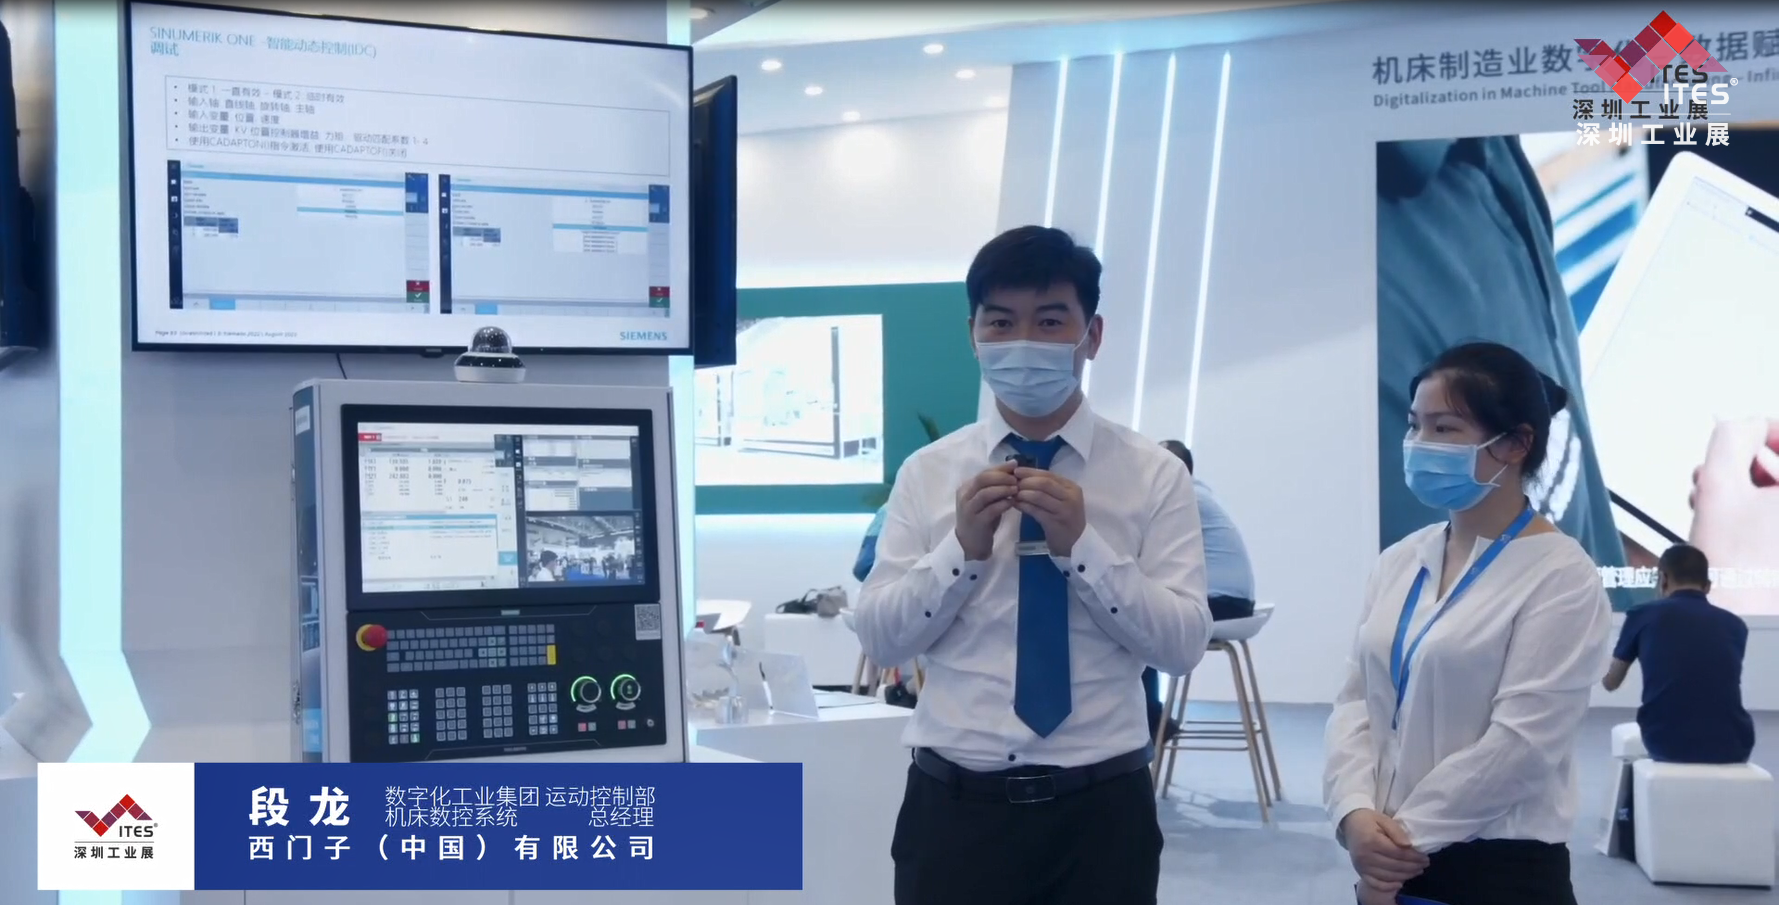 西门子在2022 ITES深圳工业展现场带来可以将虚拟世界和现实世界无缝衔接的原生态数控系统，让我们一起洞悉工业技术新趋势。